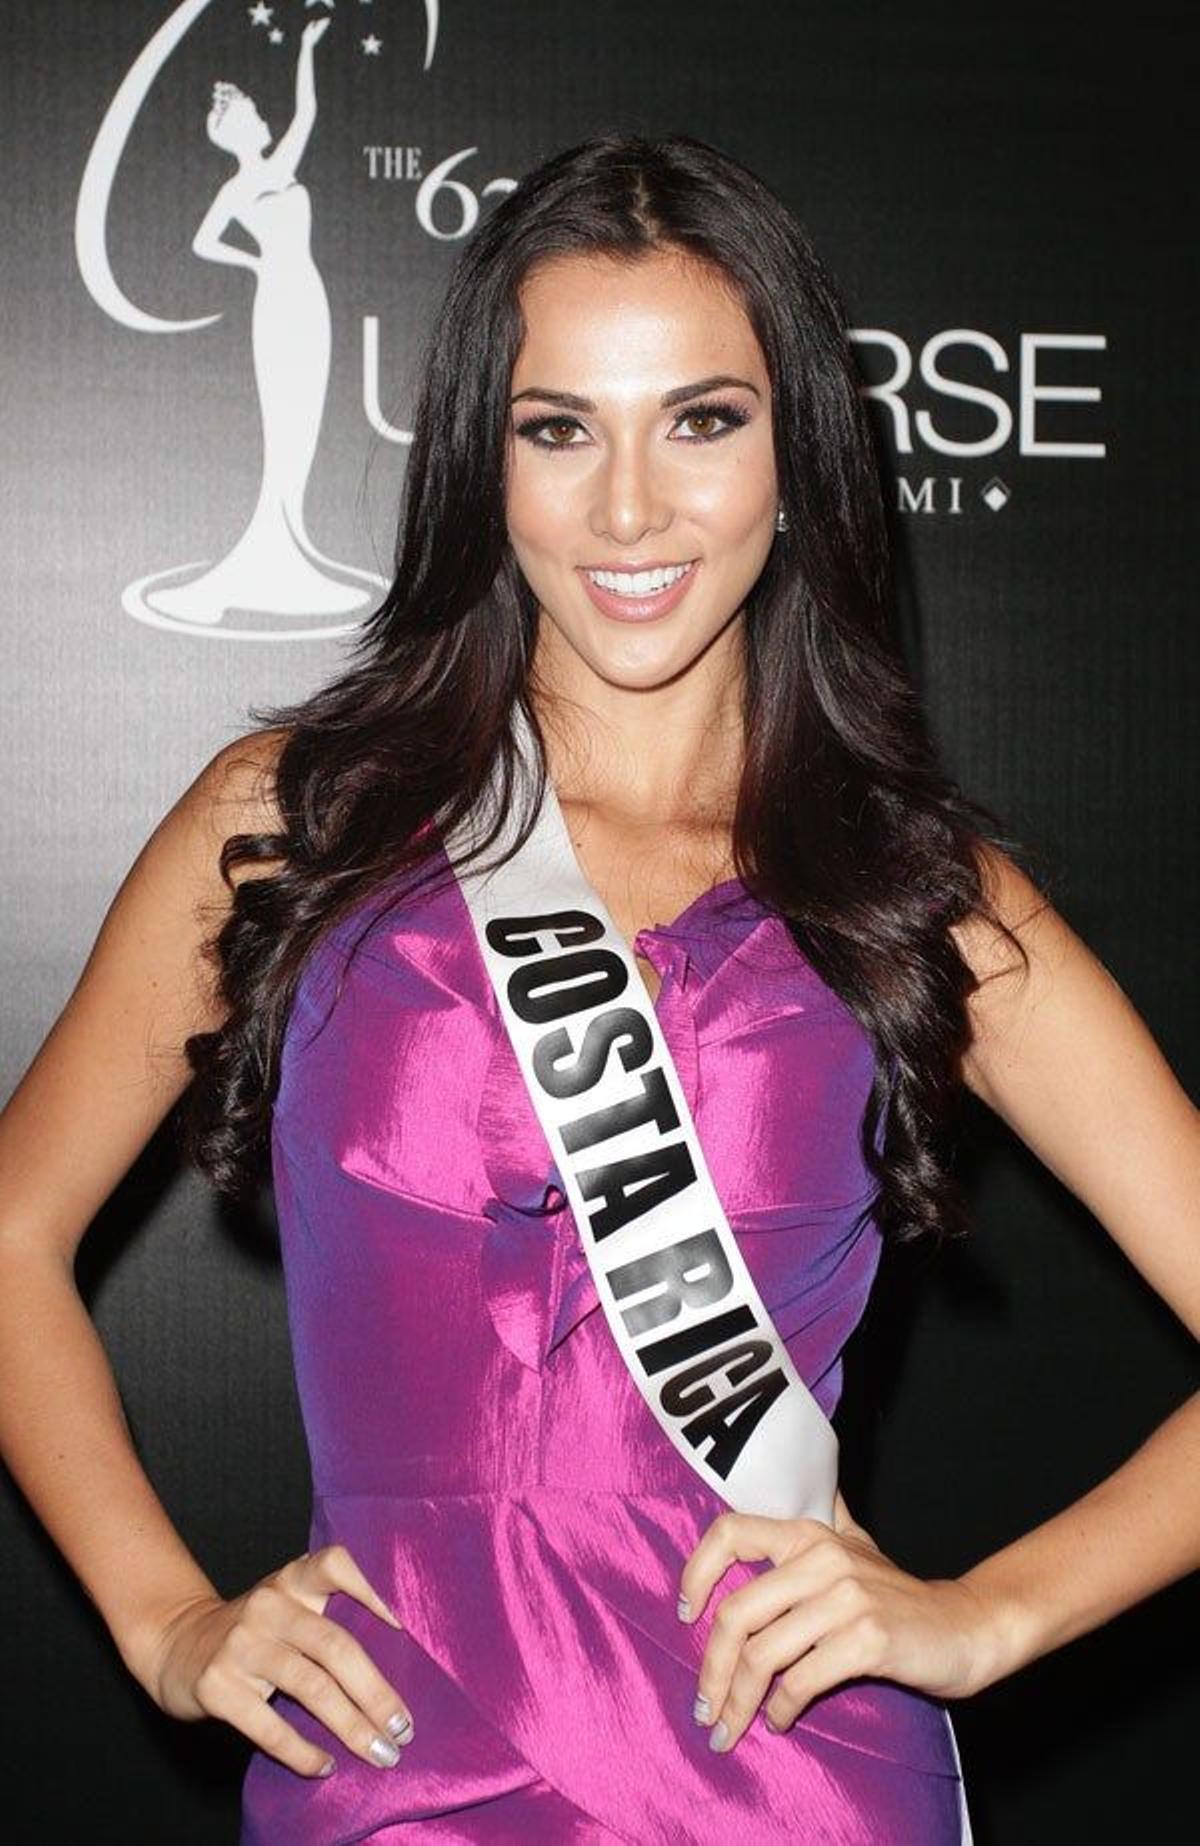 Miss Costa Rica